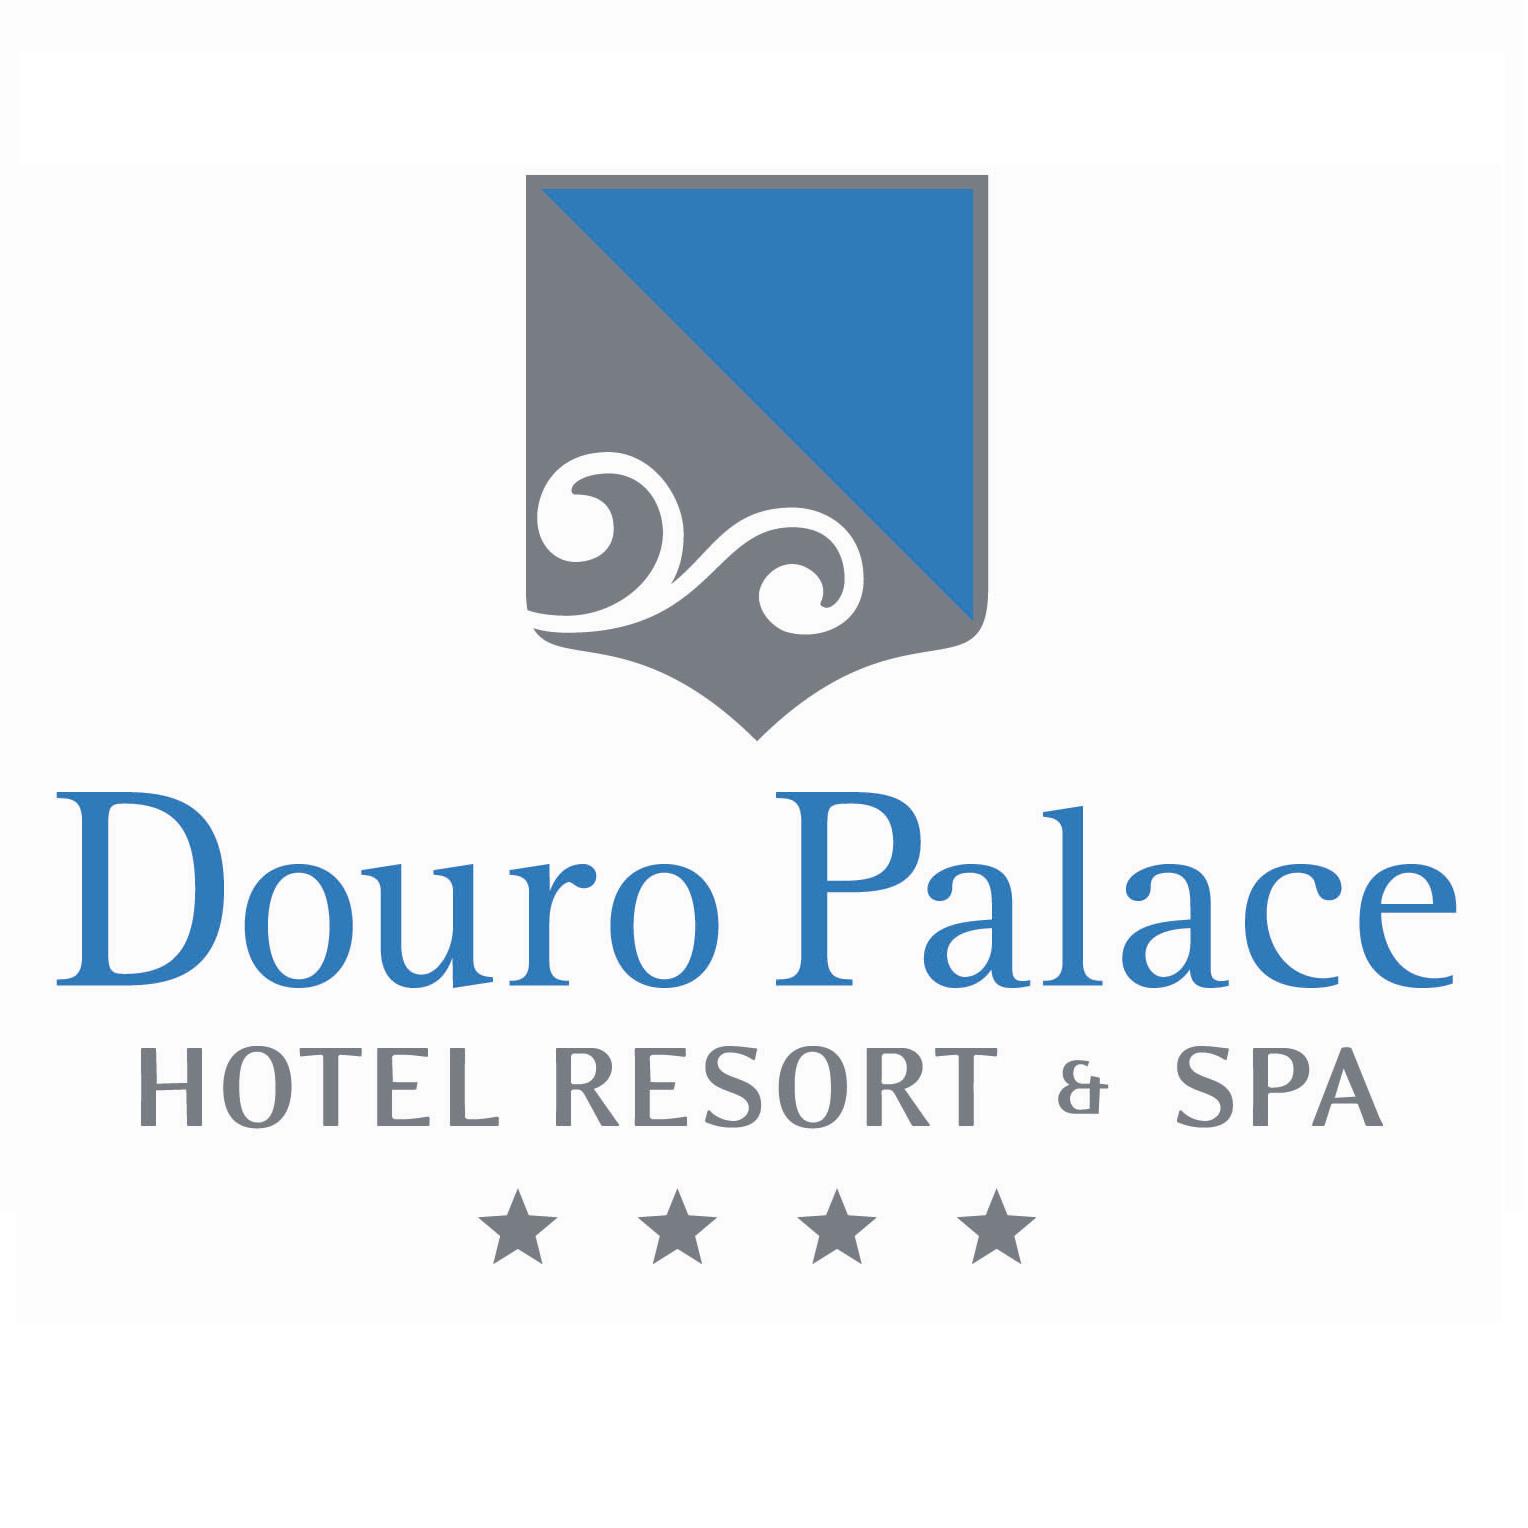 DOURO_Palace